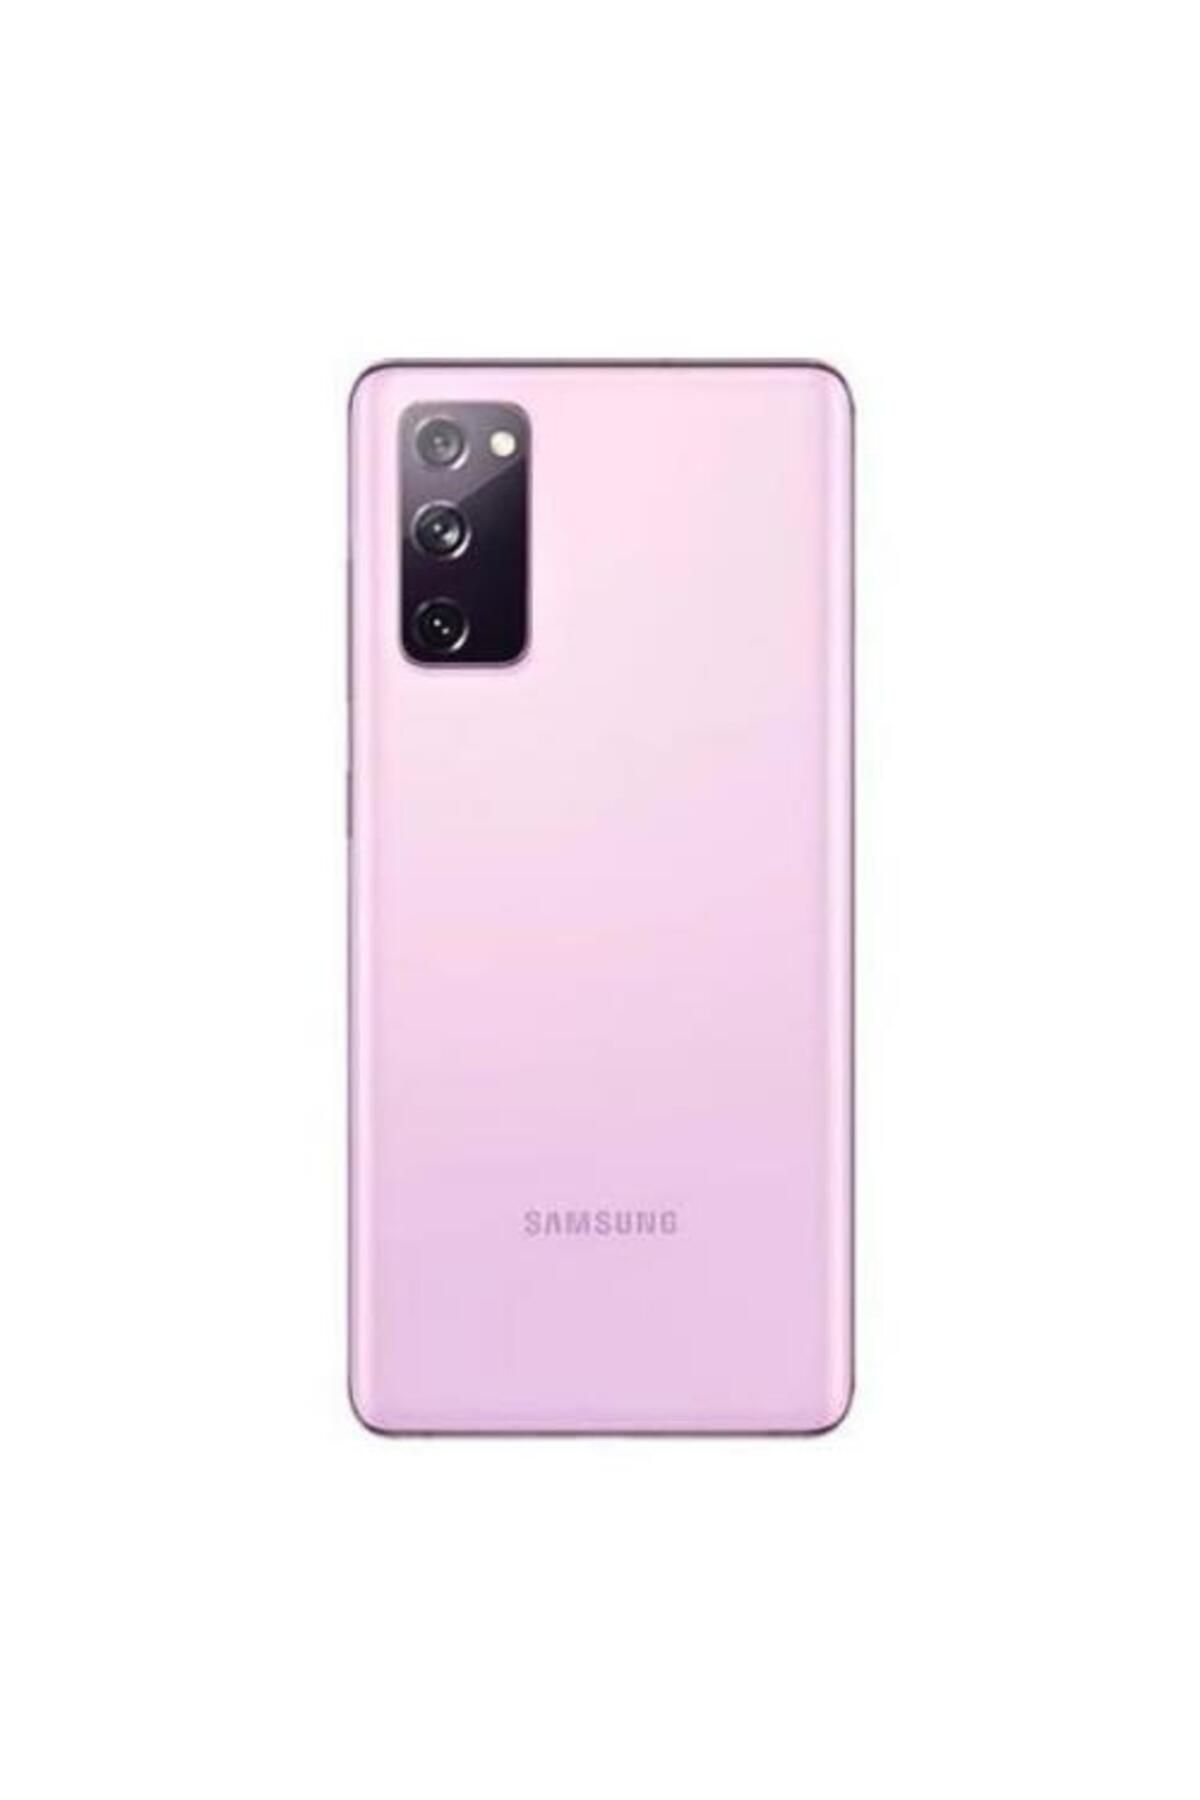 Samsung Galaxy S20 Pink 128gb Yenilenmiş B Kalite (12 AY GARANTİLİ)